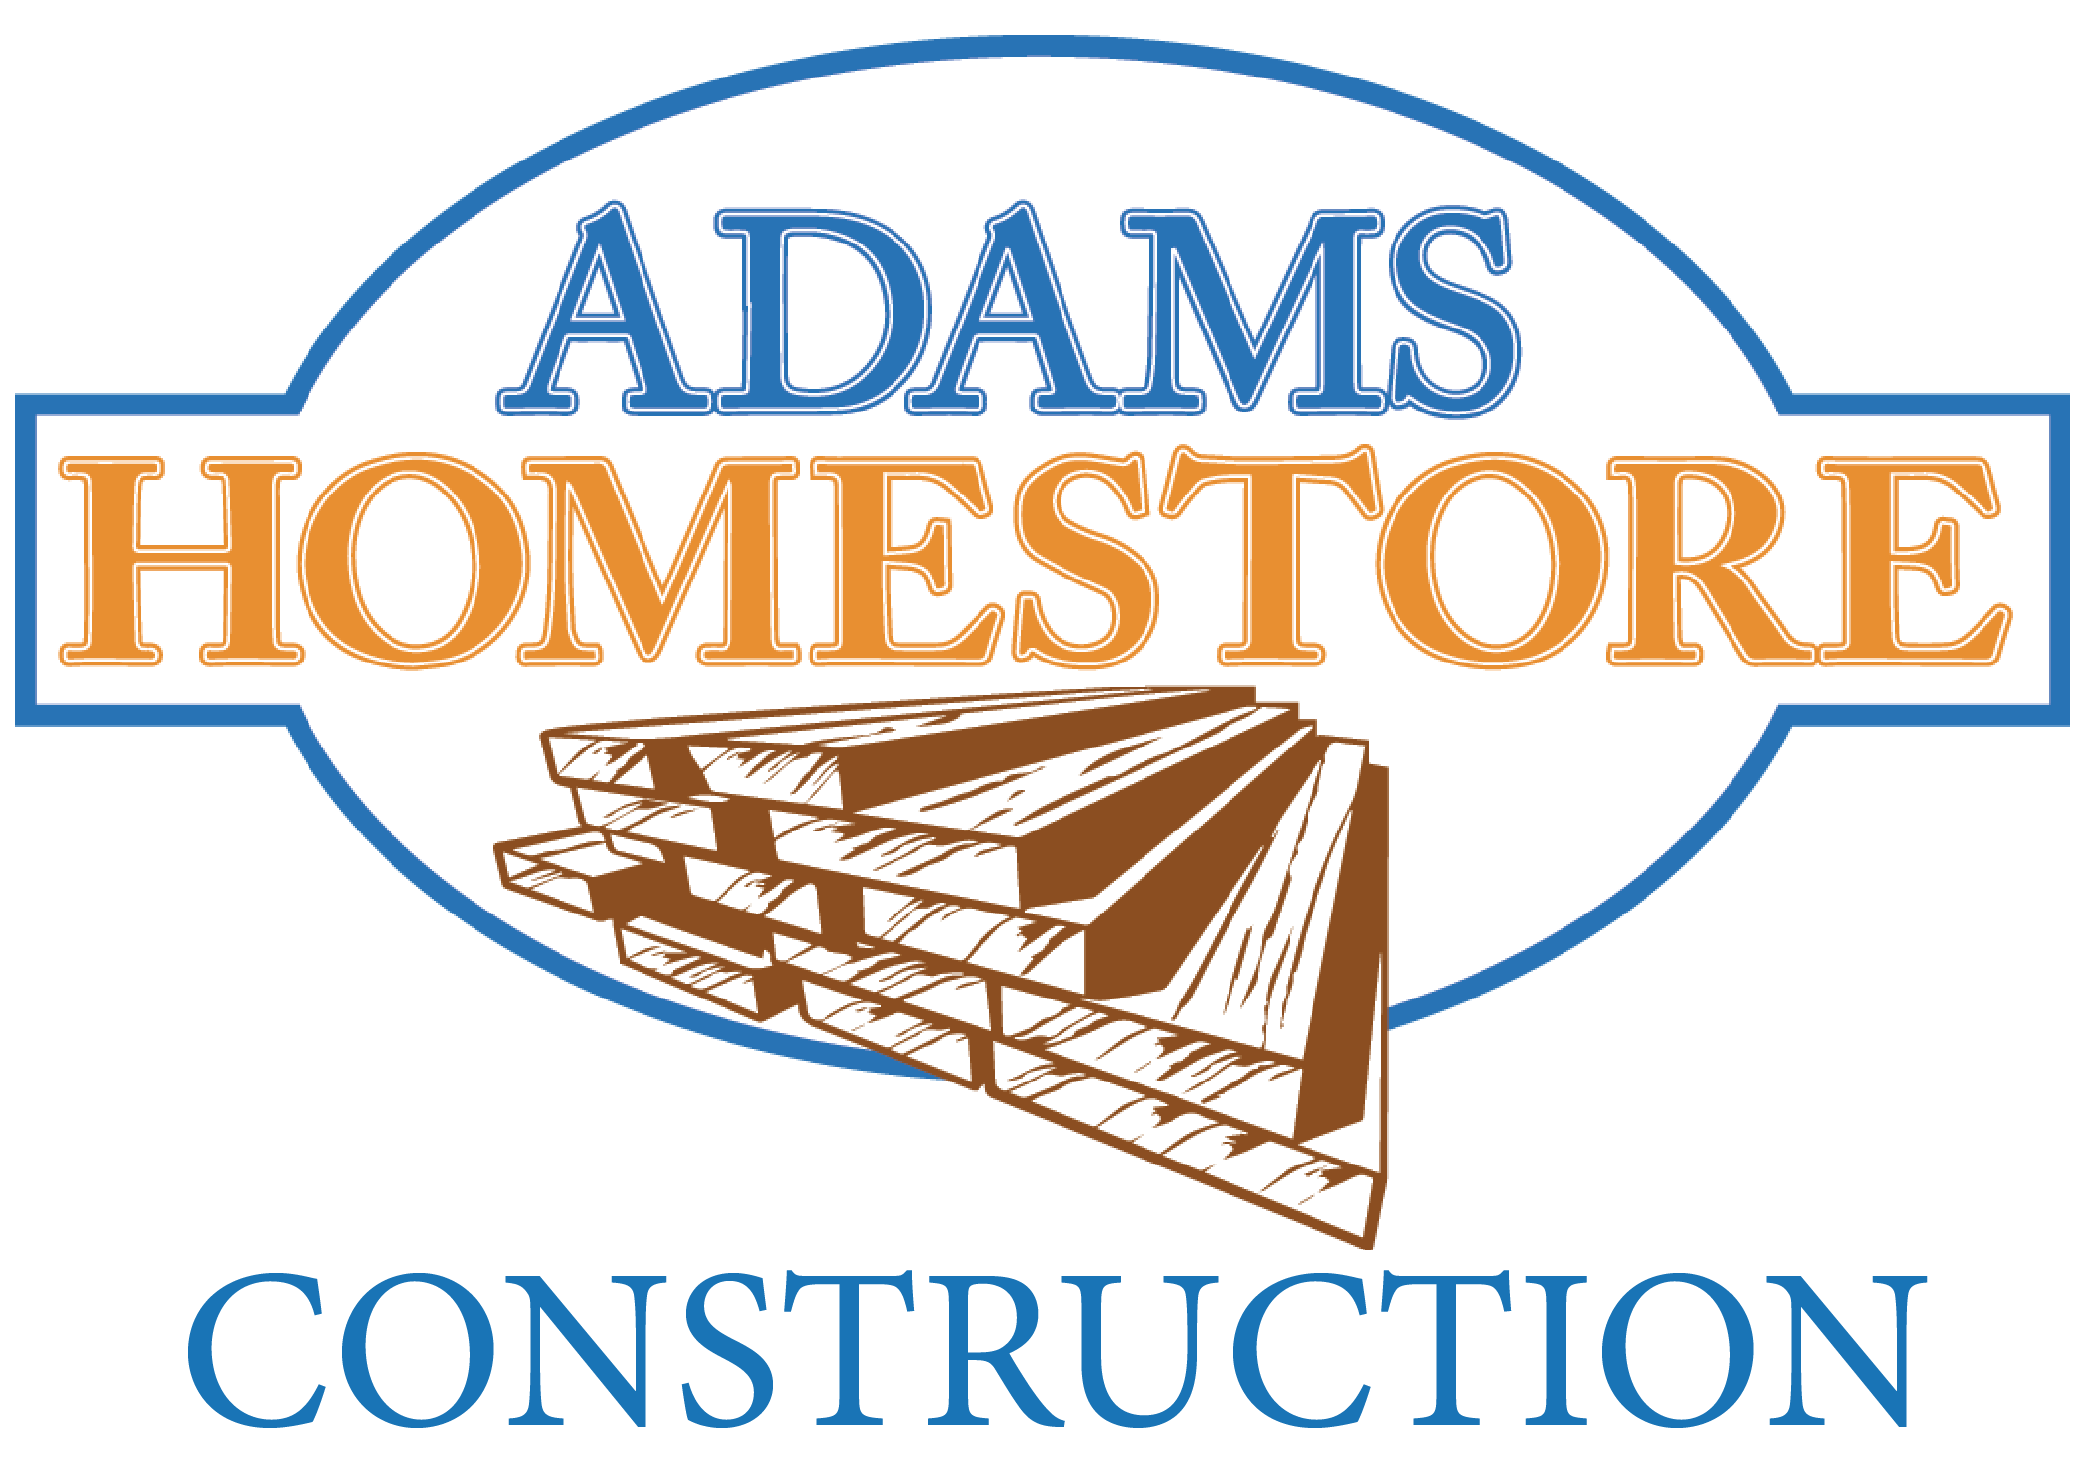 Adams Homestore Construction